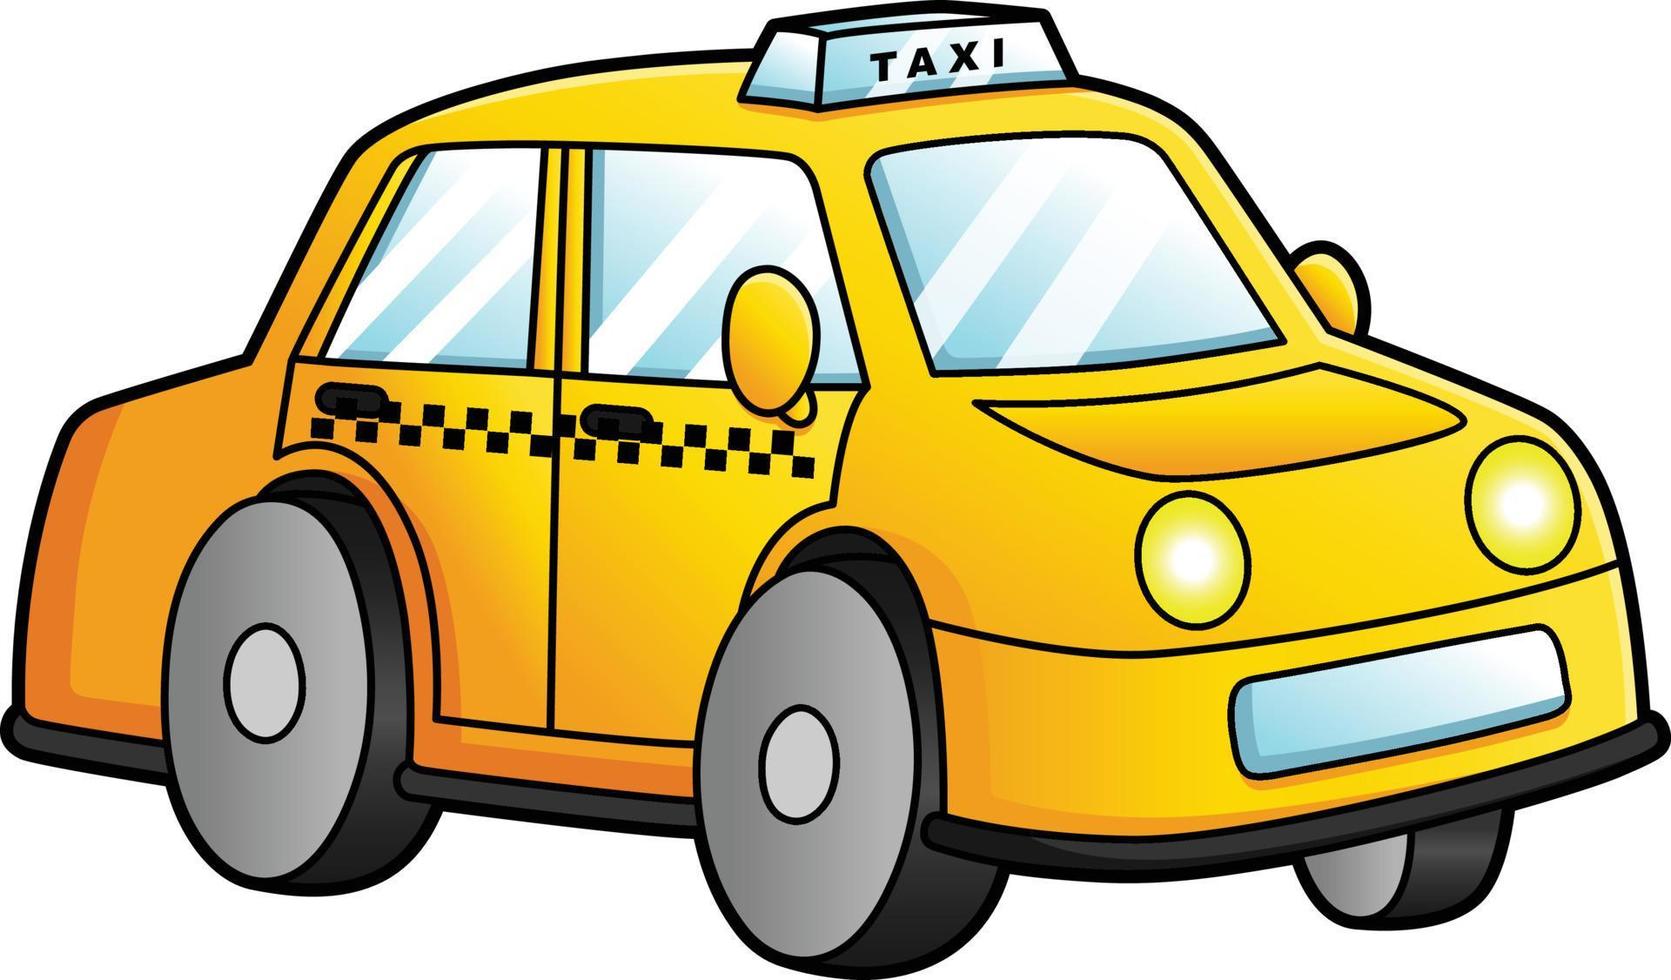 taxi cartoon clipart gekleurde illustratie vector